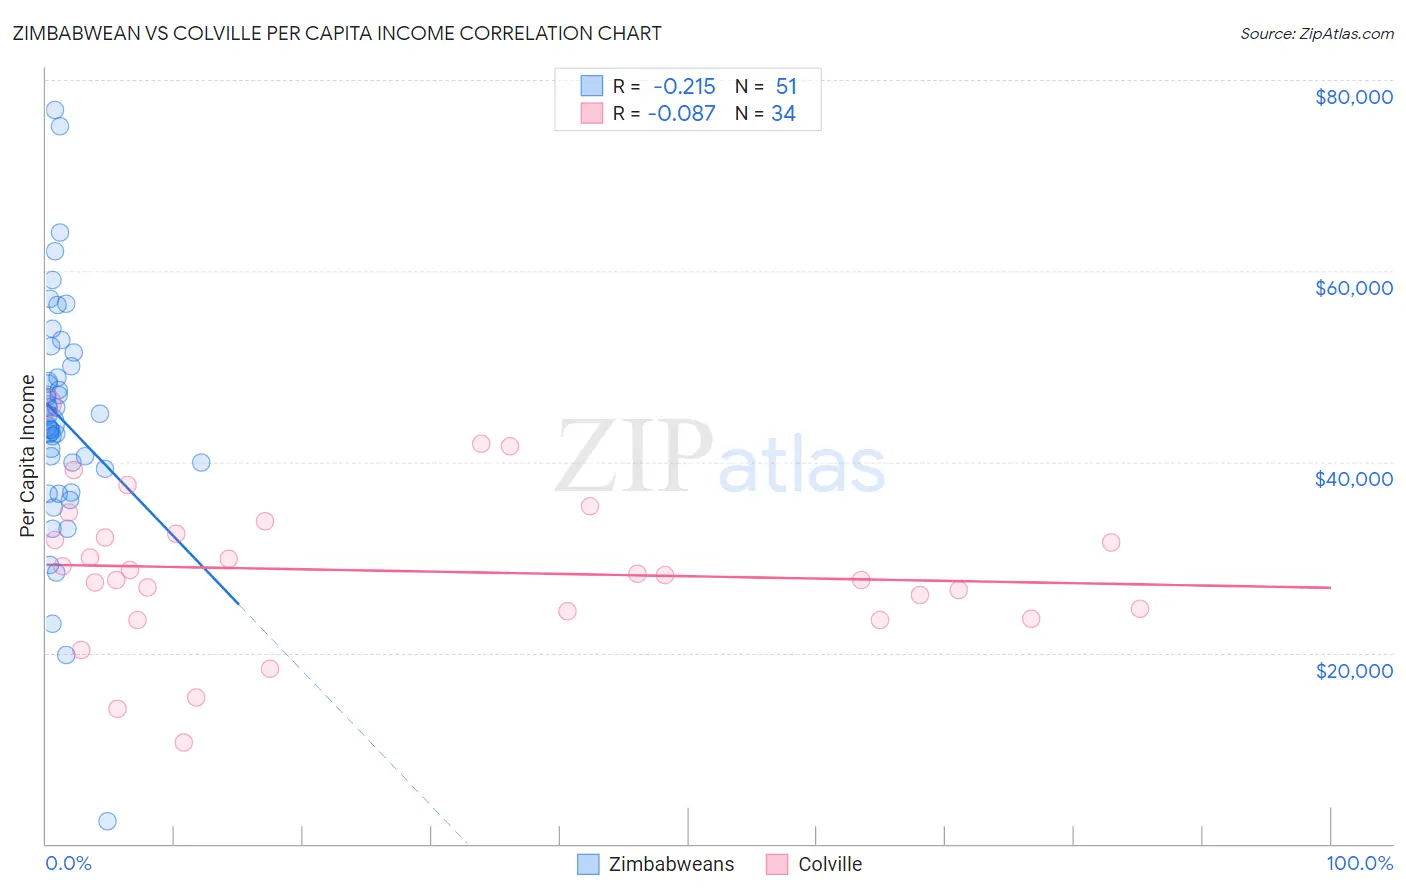 Zimbabwean vs Colville Per Capita Income